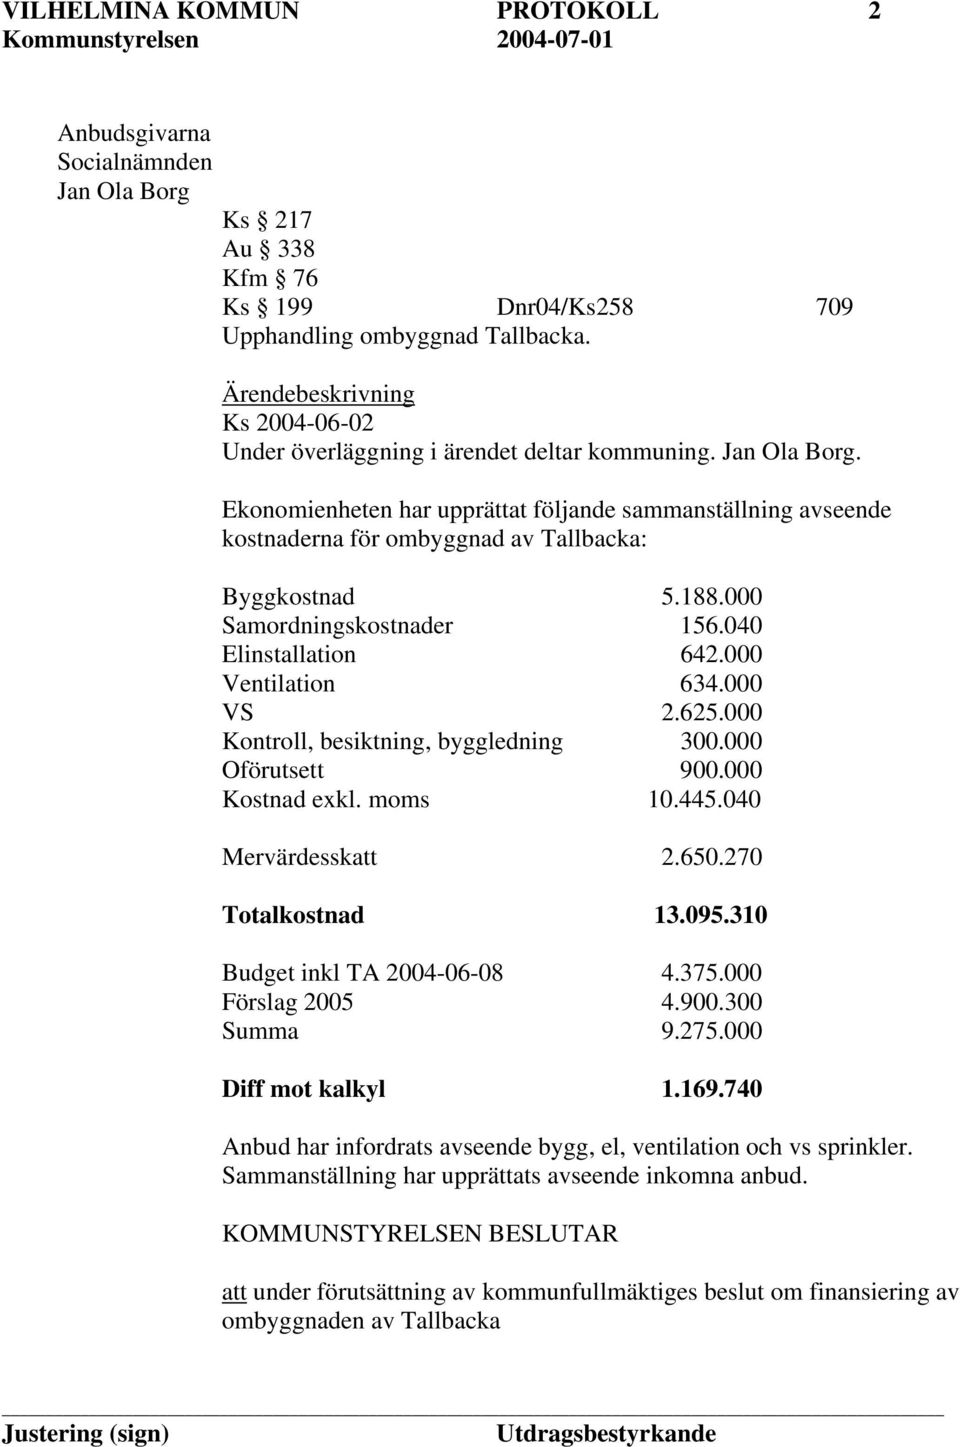 Ekonomienheten har upprättat följande sammanställning avseende kostnaderna för ombyggnad av Tallbacka: Byggkostnad 5.188.000 Samordningskostnader 156.040 Elinstallation 642.000 Ventilation 634.